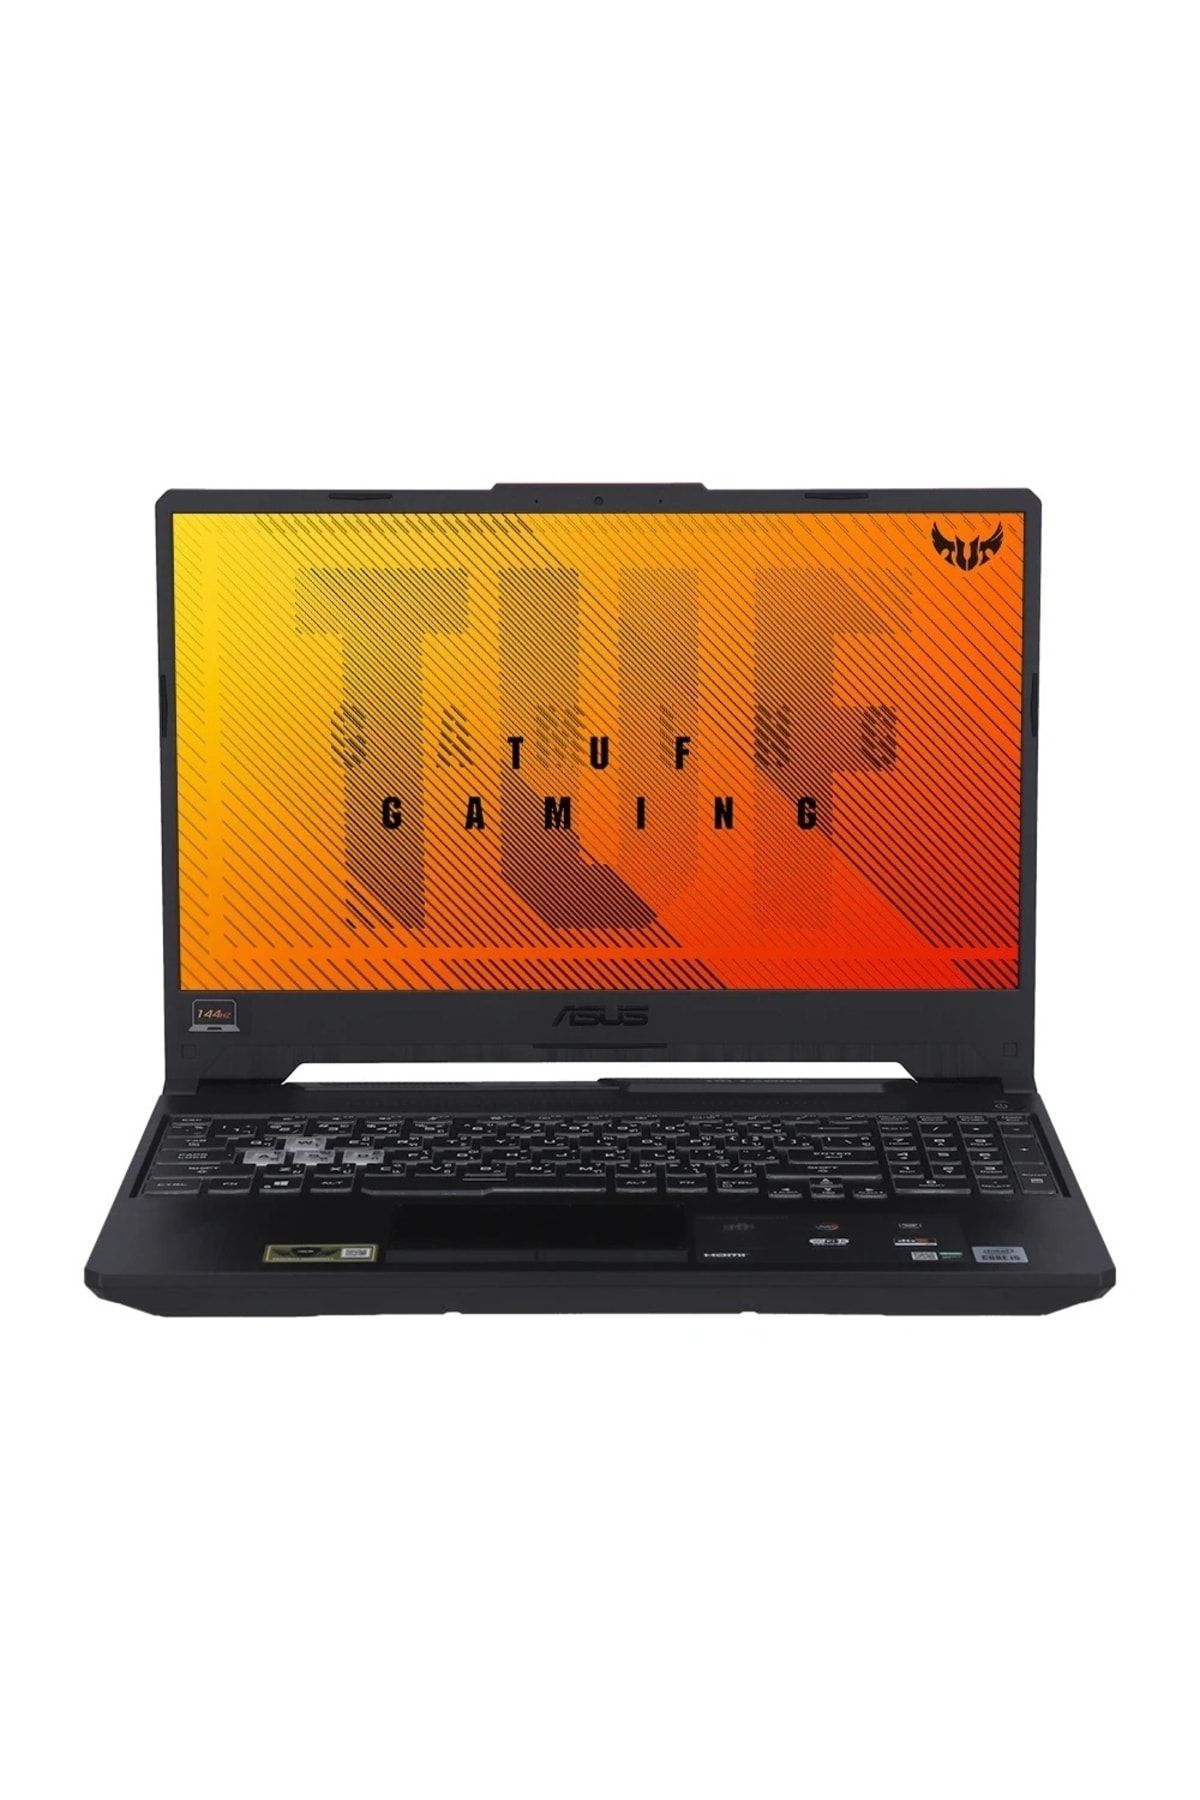 ASUS Yenilenmiş Tuf Gaming Fx506lhb-hn323w I5 10300h 8gb 512gb Ssd 15.6 Gtx1650 4gb W11 Fhd Notebook